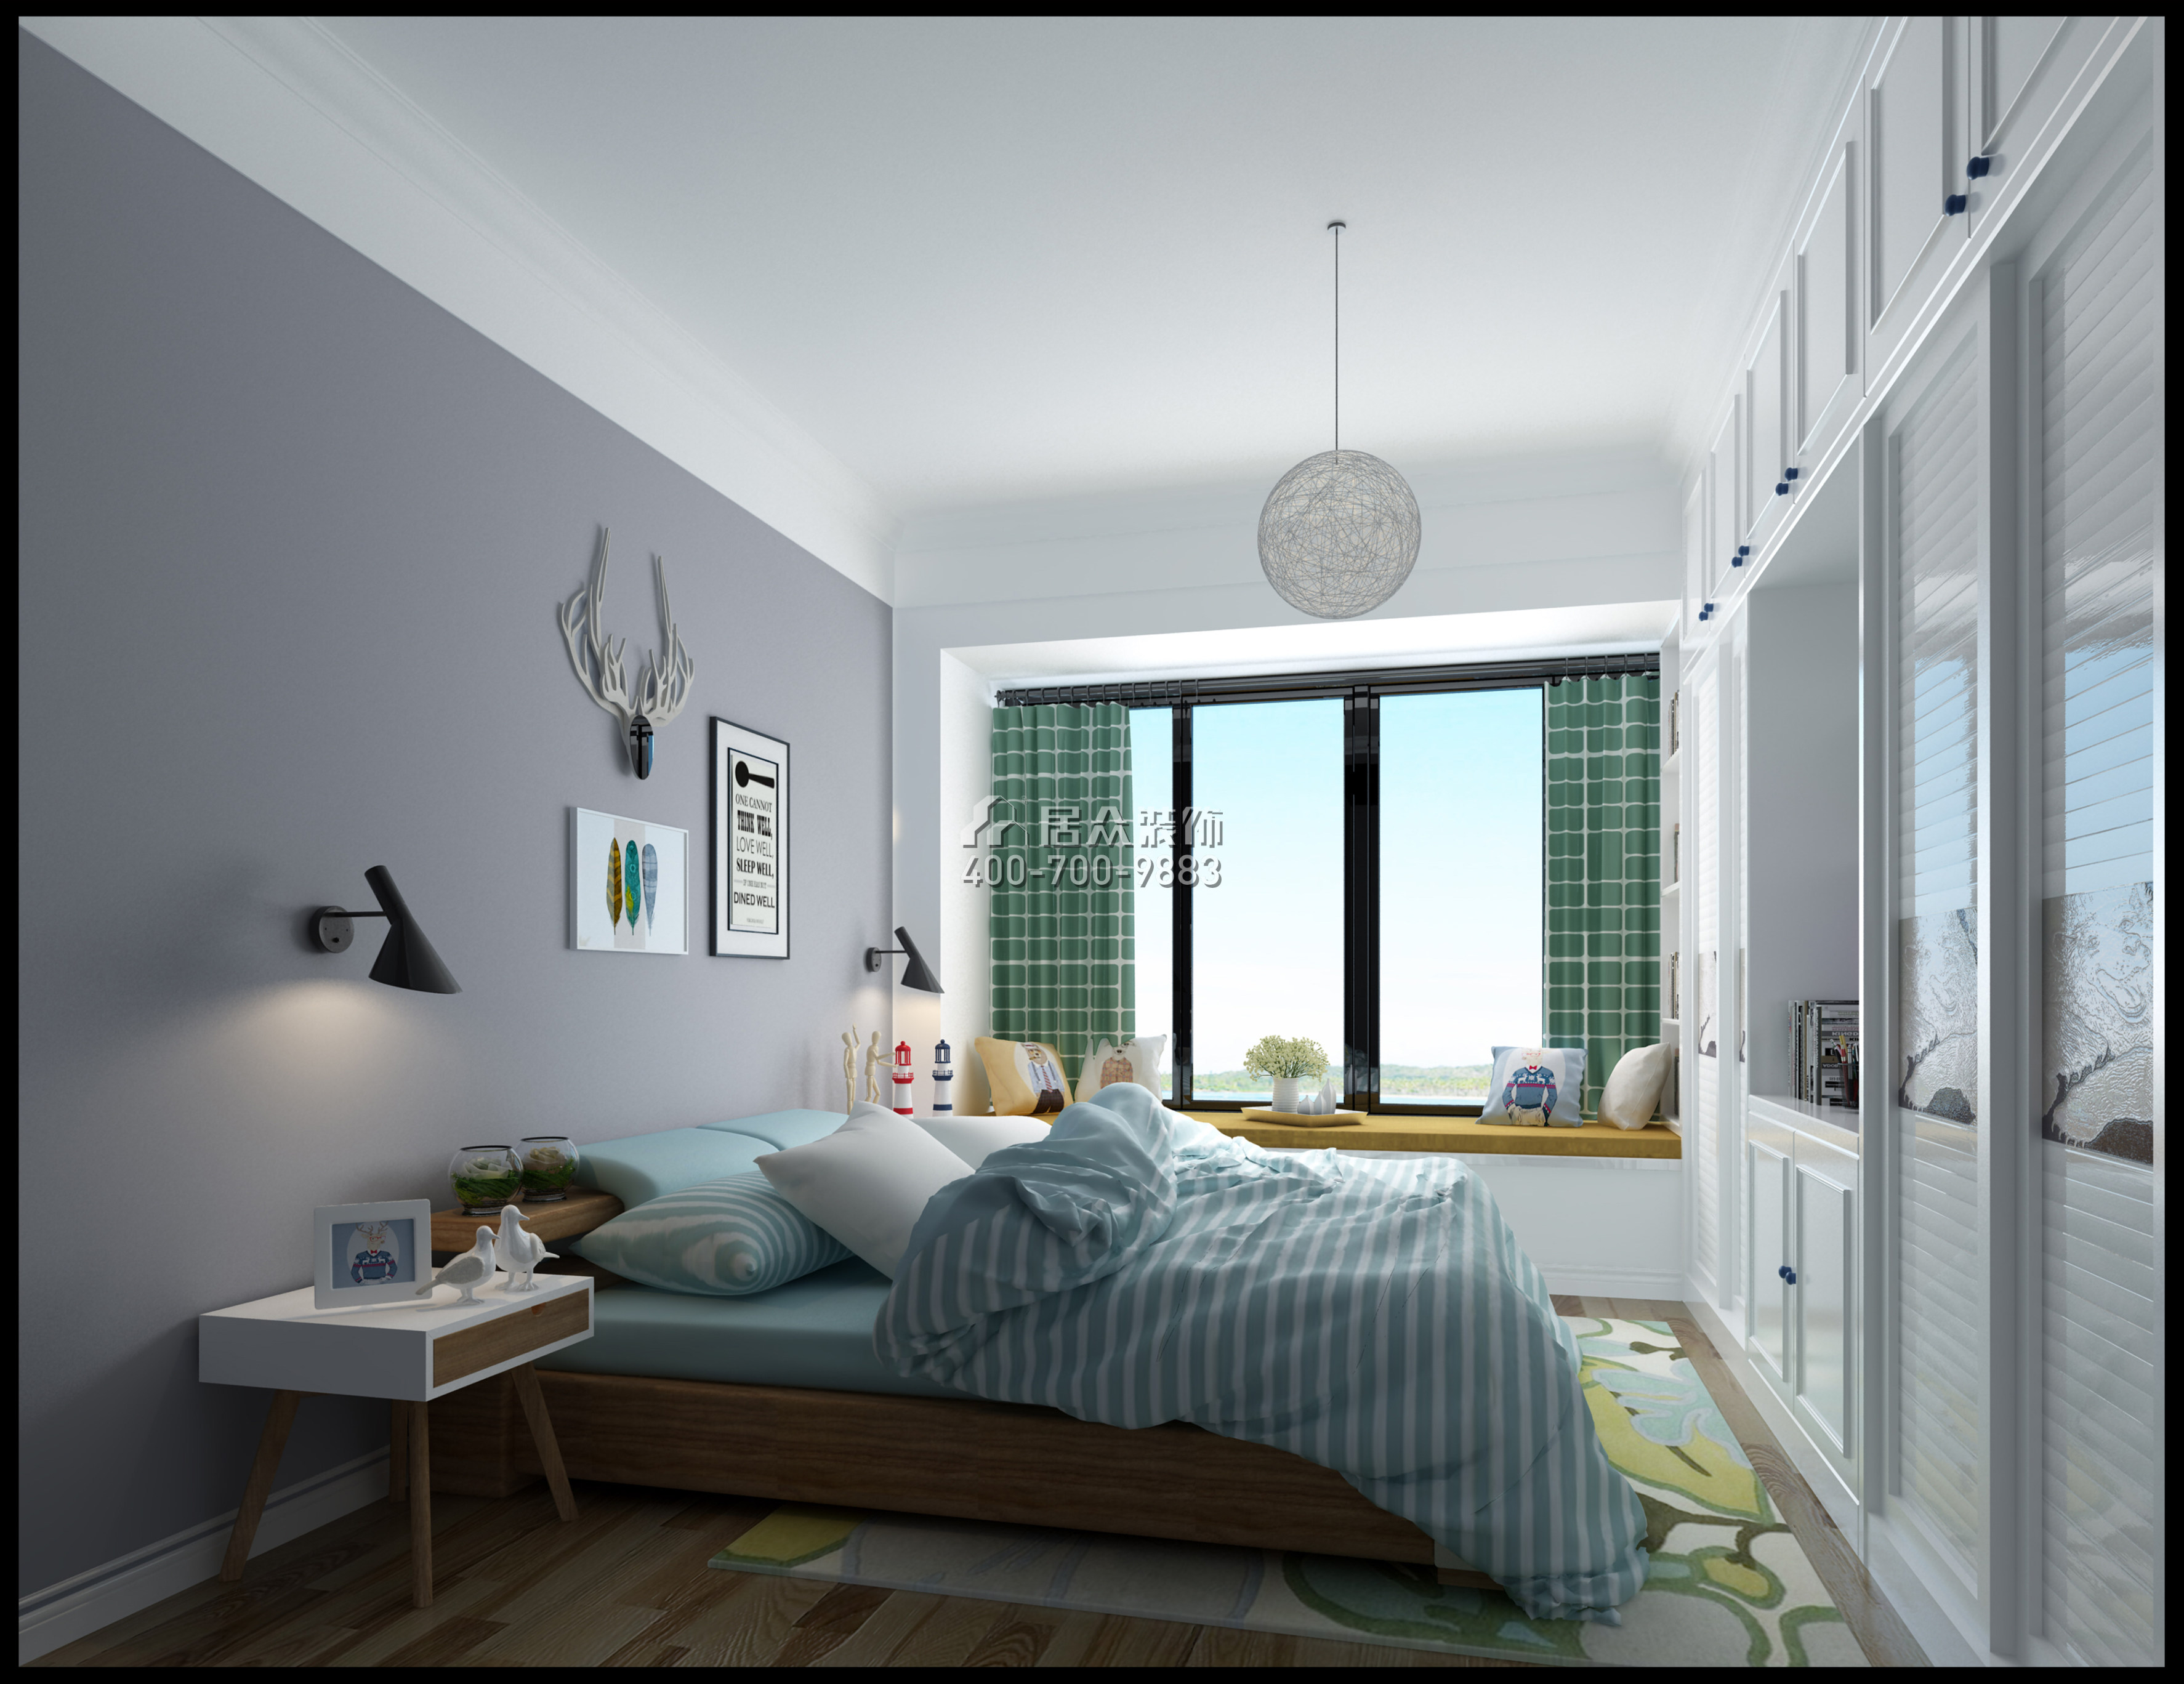 中骏四季阳光86平方米北欧风格平层户型卧室装修效果图